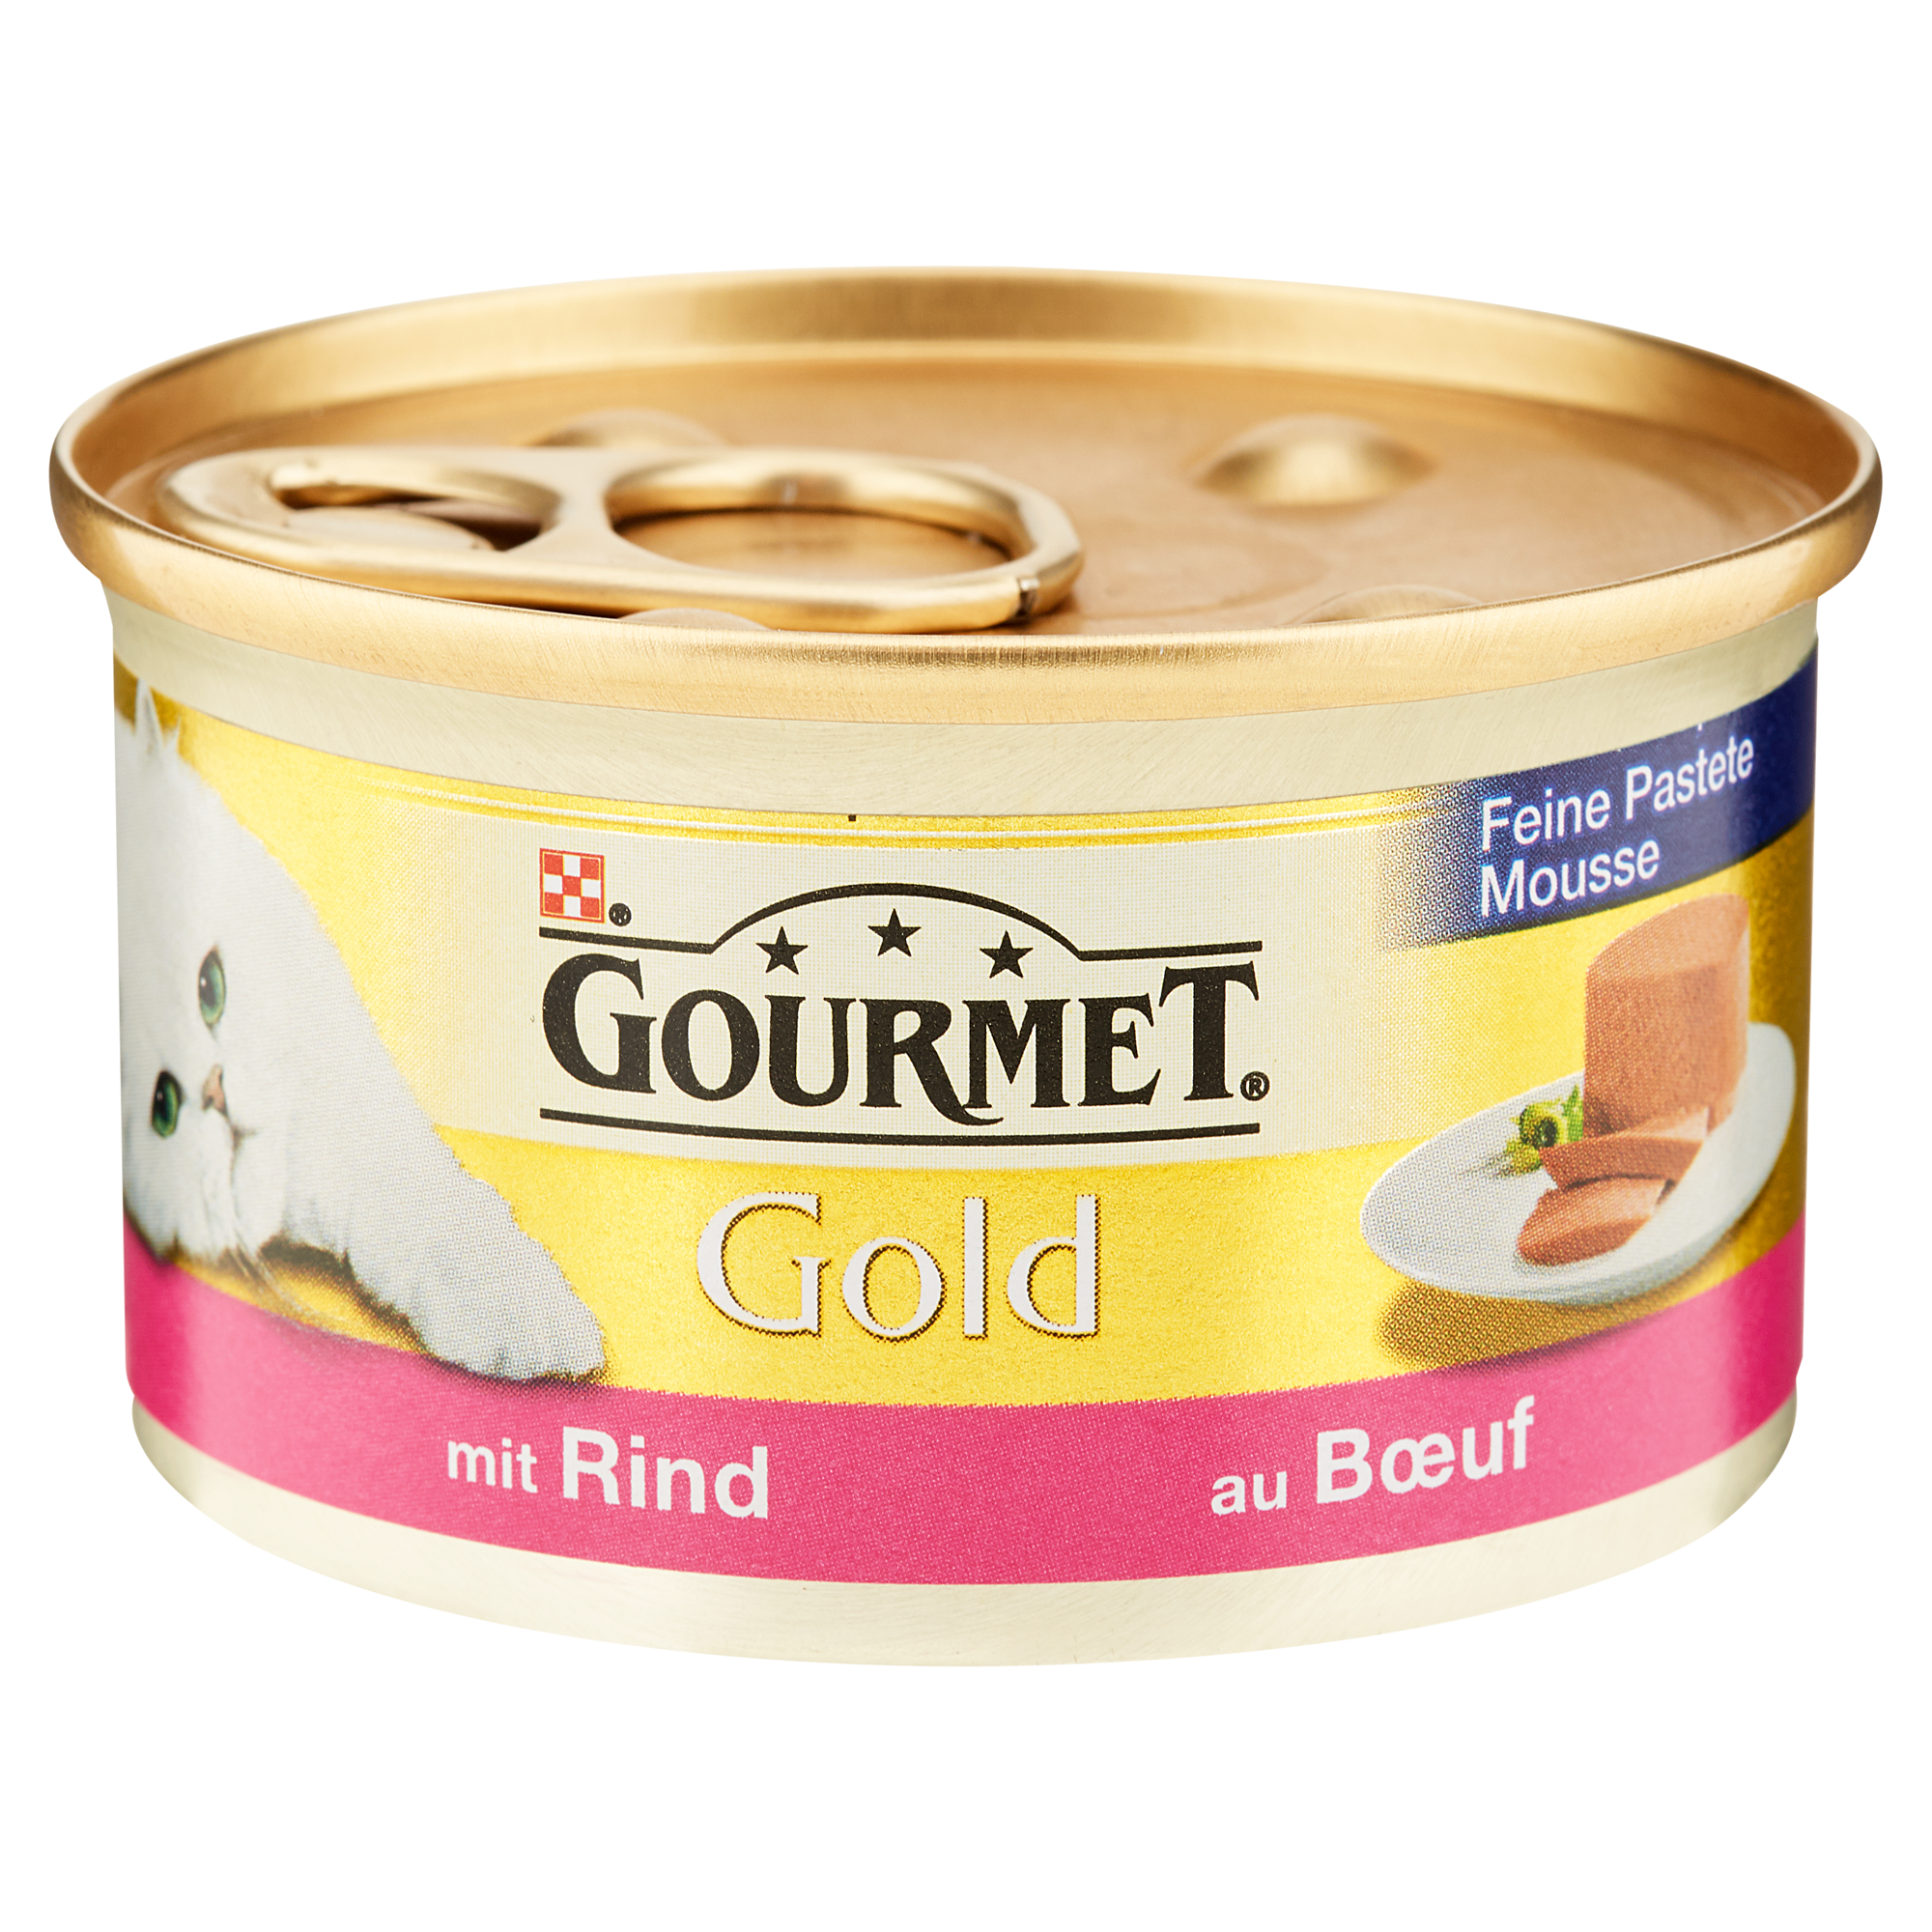 Katzennassfutter "Gourmet Gold” mit Rind 85 g + product picture